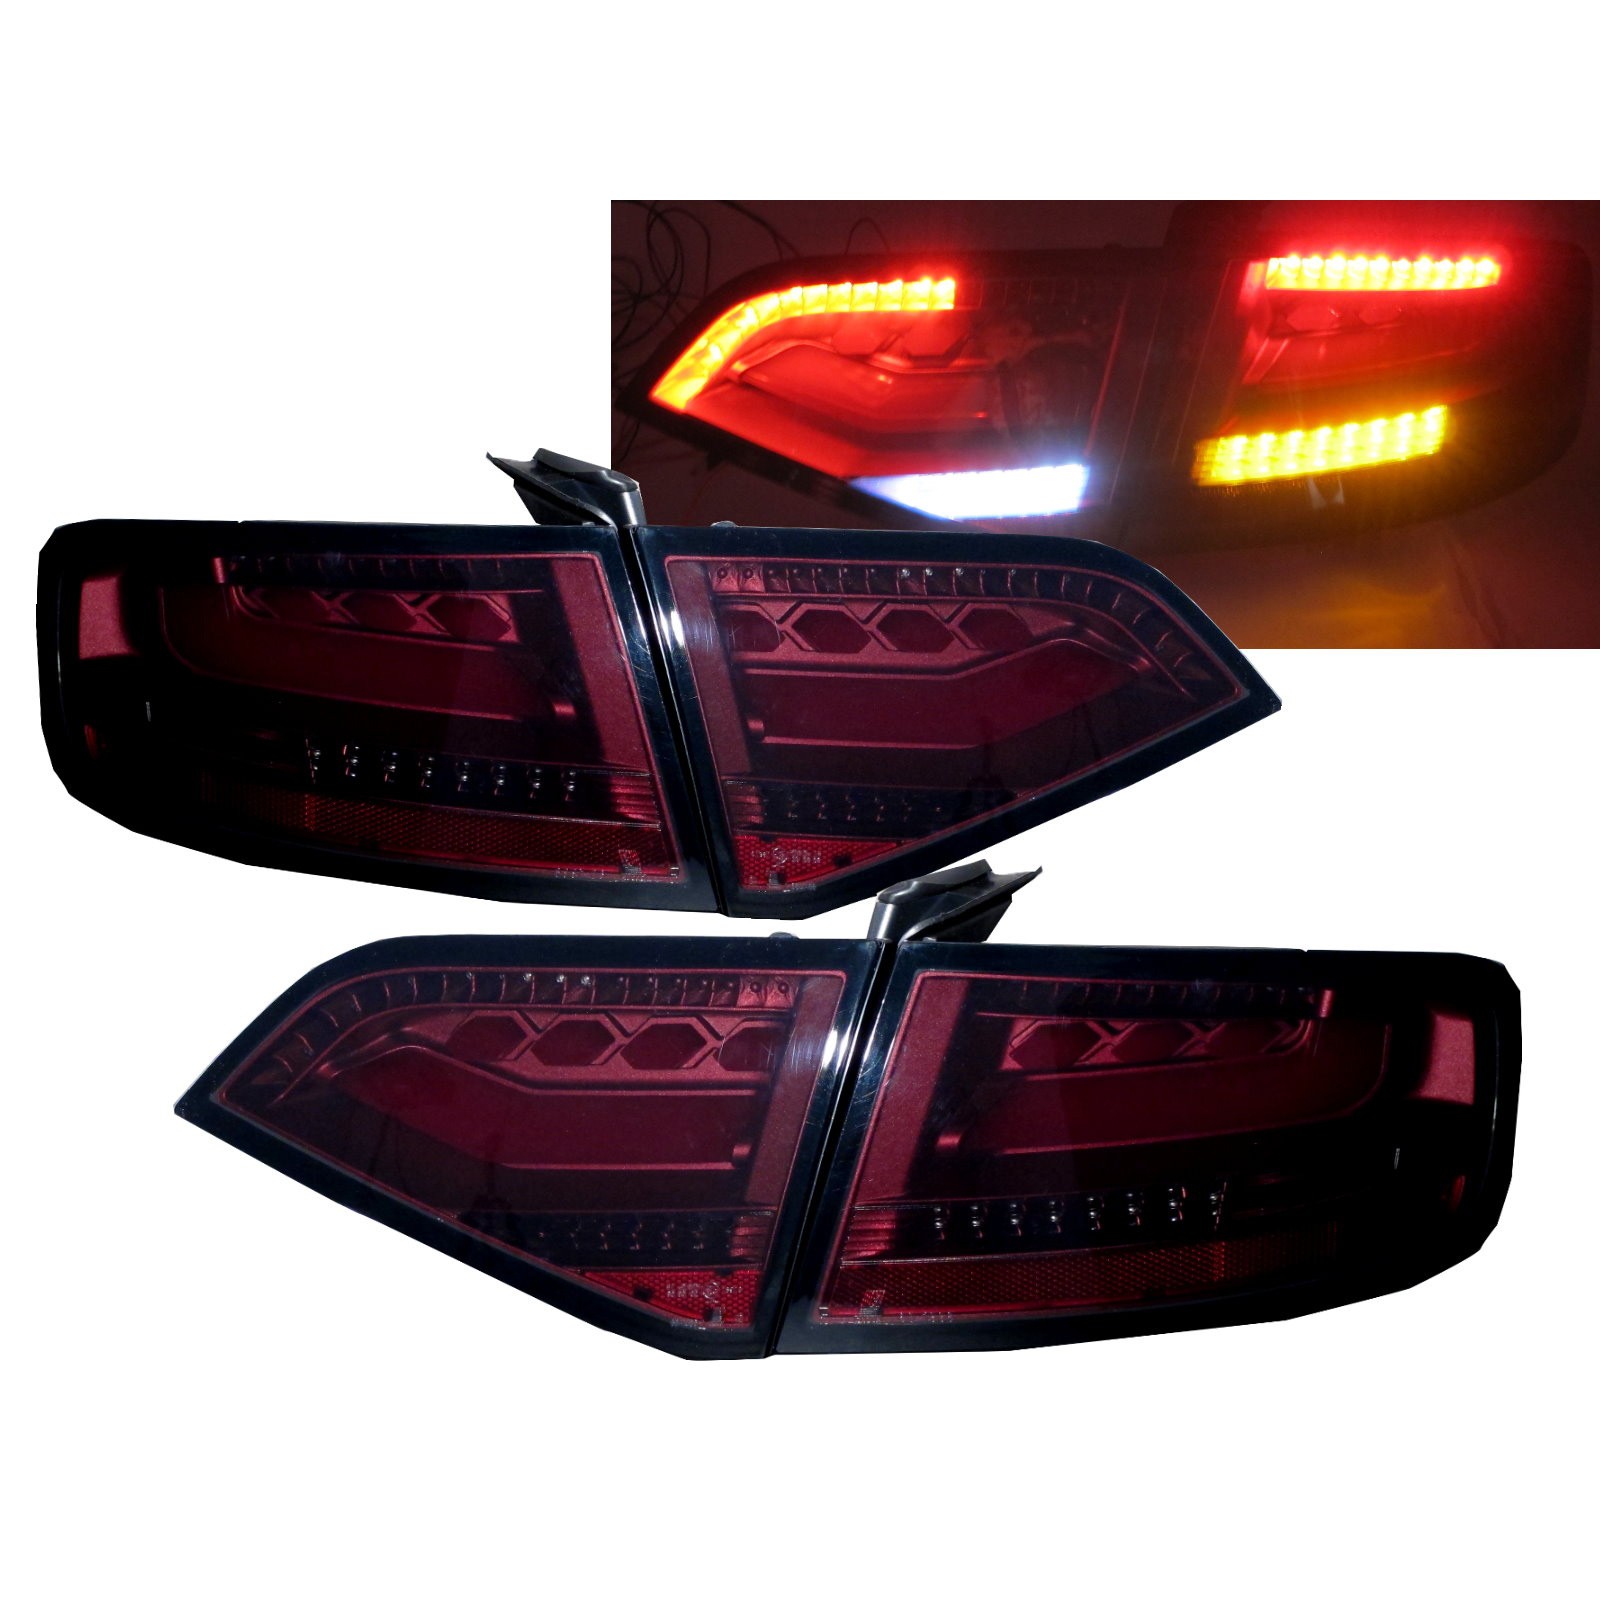 CrazyTheGod A4/S4/RS4 B8 8K SEDAN 2008-2011 PRE-FACELIFT LED BAR Tail Rear Light Lamp V1 RED/SMOKE for AUDI